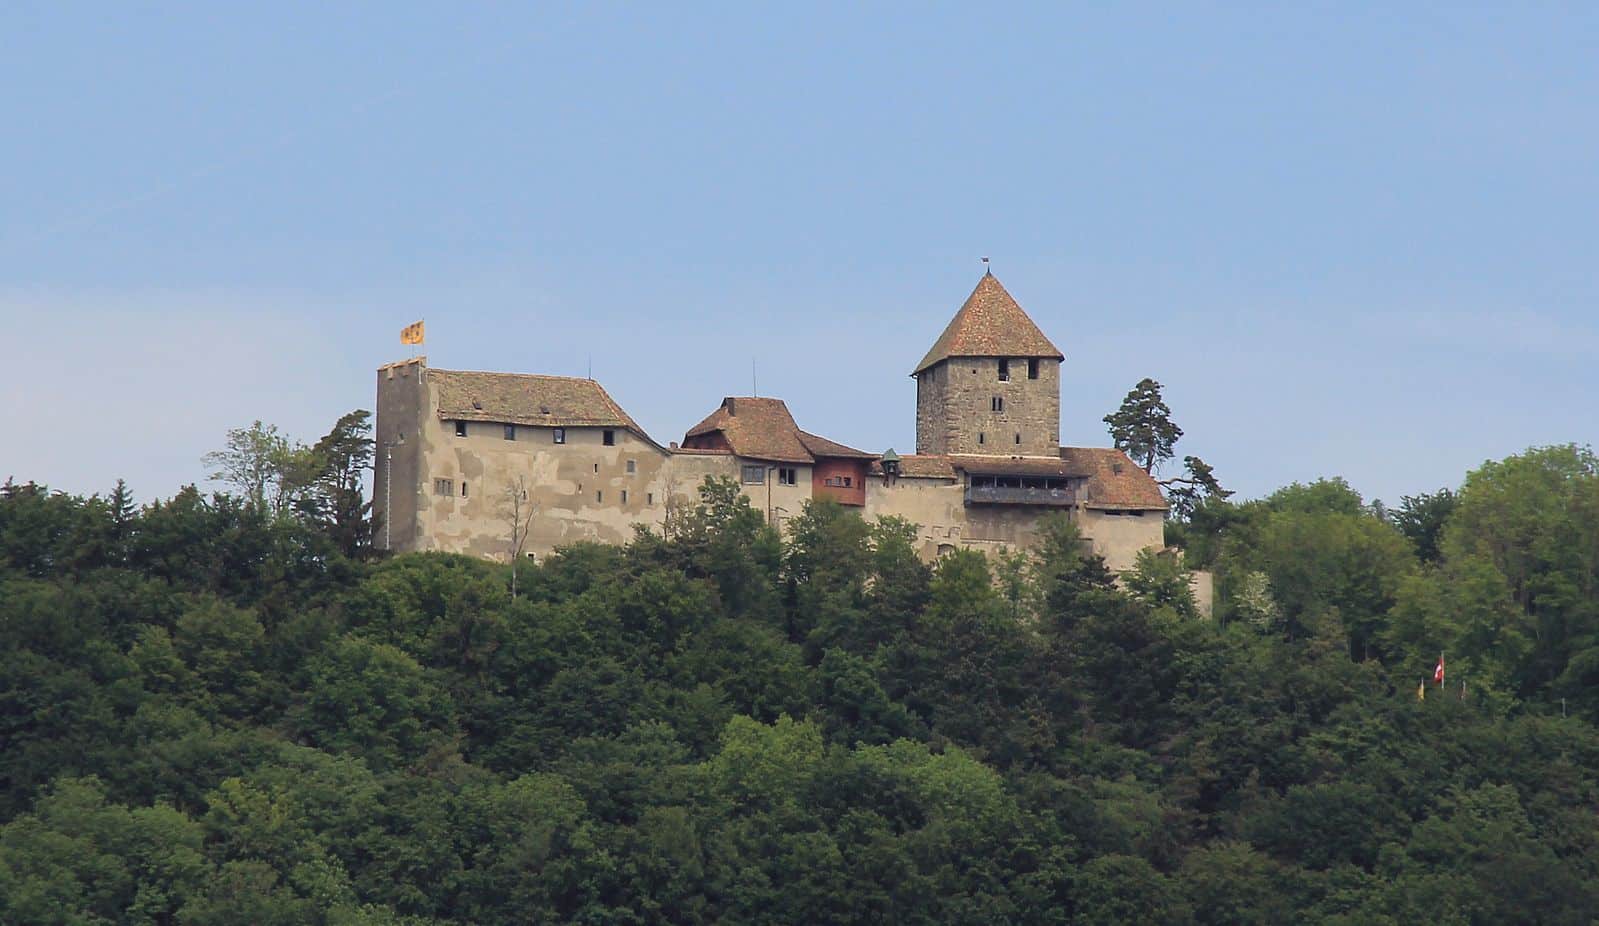 Замок Хоэнклинген в Штайн-на-Рейне, кантон Шаффхаузен. Современный вид замка, в основном, оформился в XIII-XIV вв. 2012 г. (© Gnubold Micha Ruh)